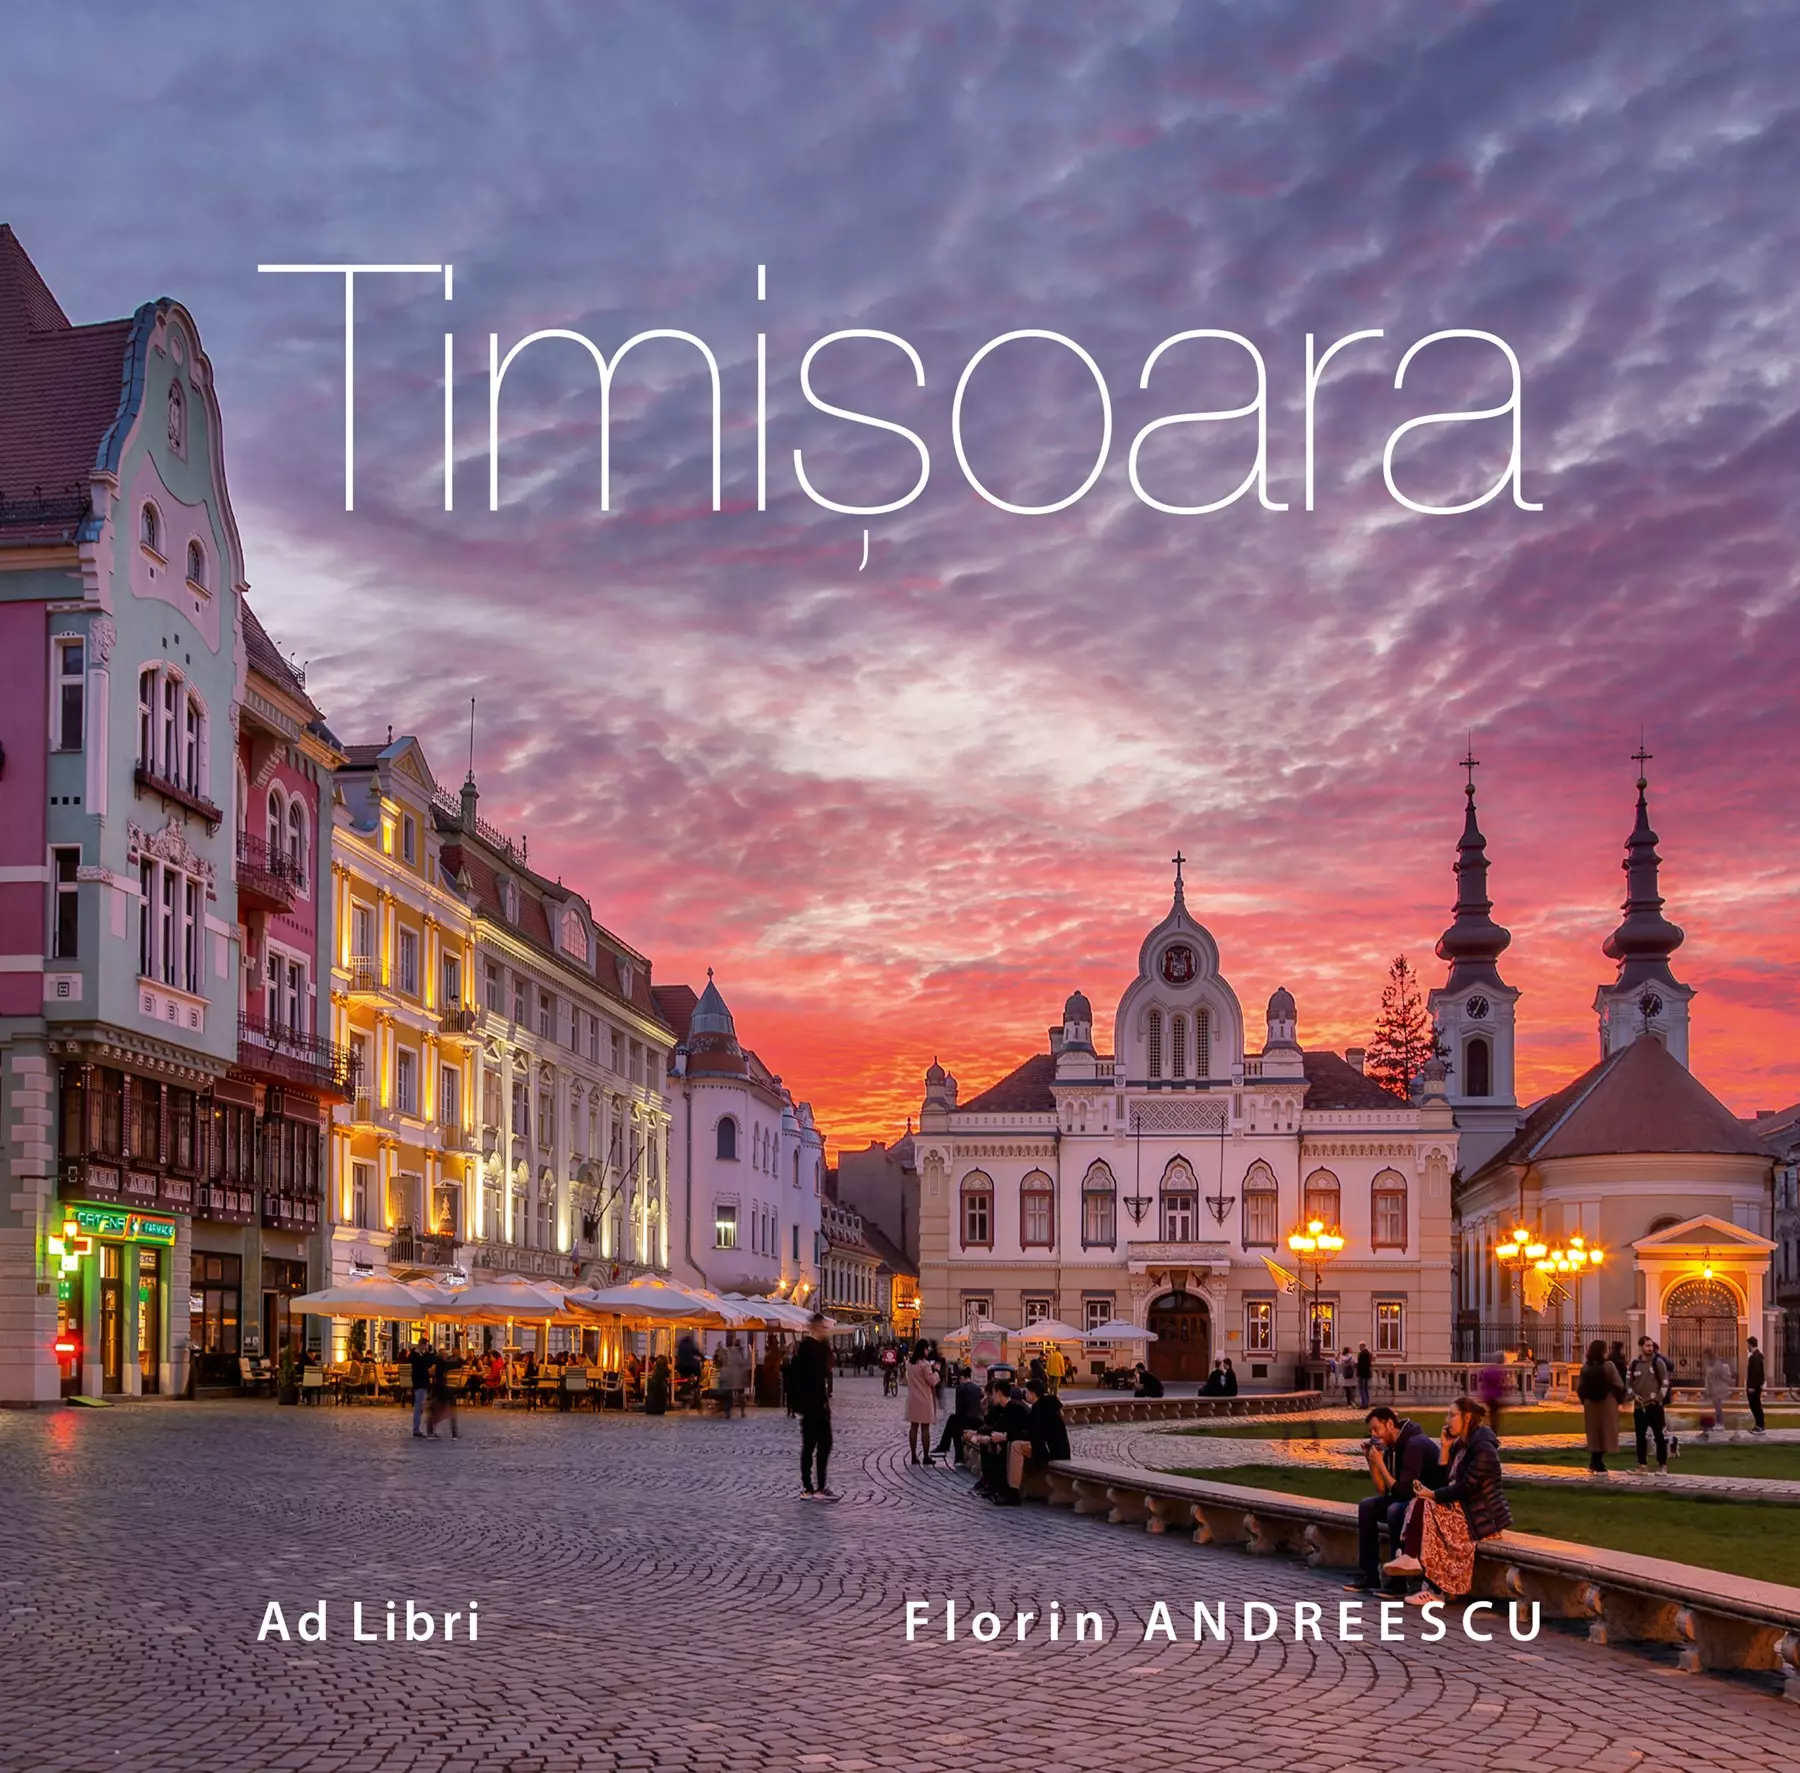 Album Timisoara